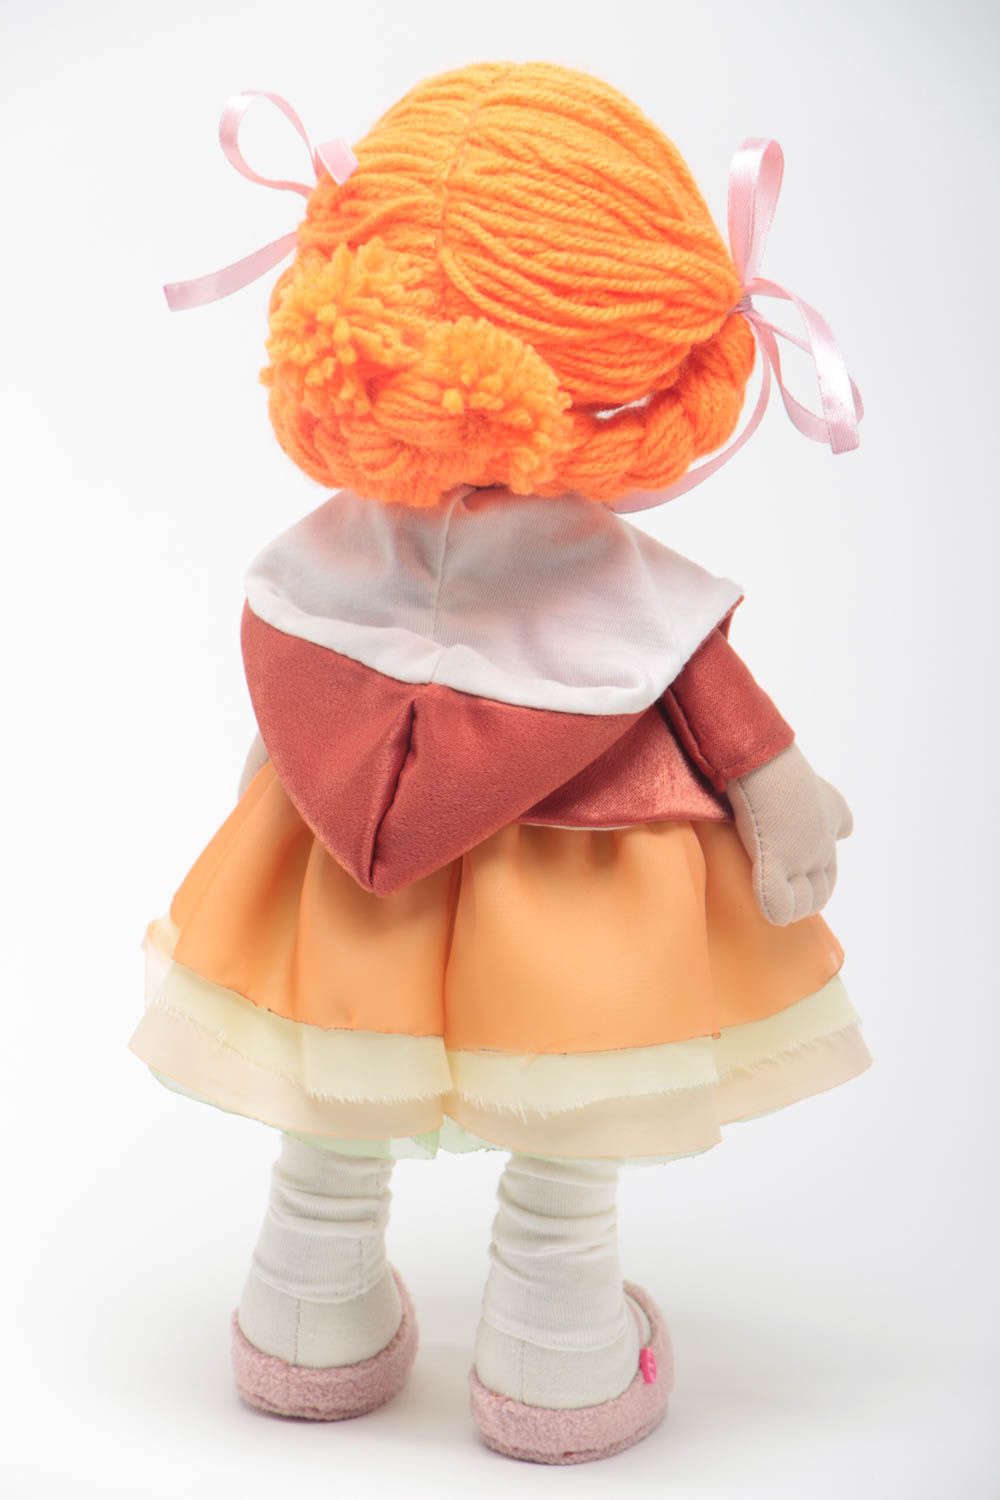 Handmade Designer Puppe in orange Kleidung Stoff Spielzeug schöne Puppe foto 4